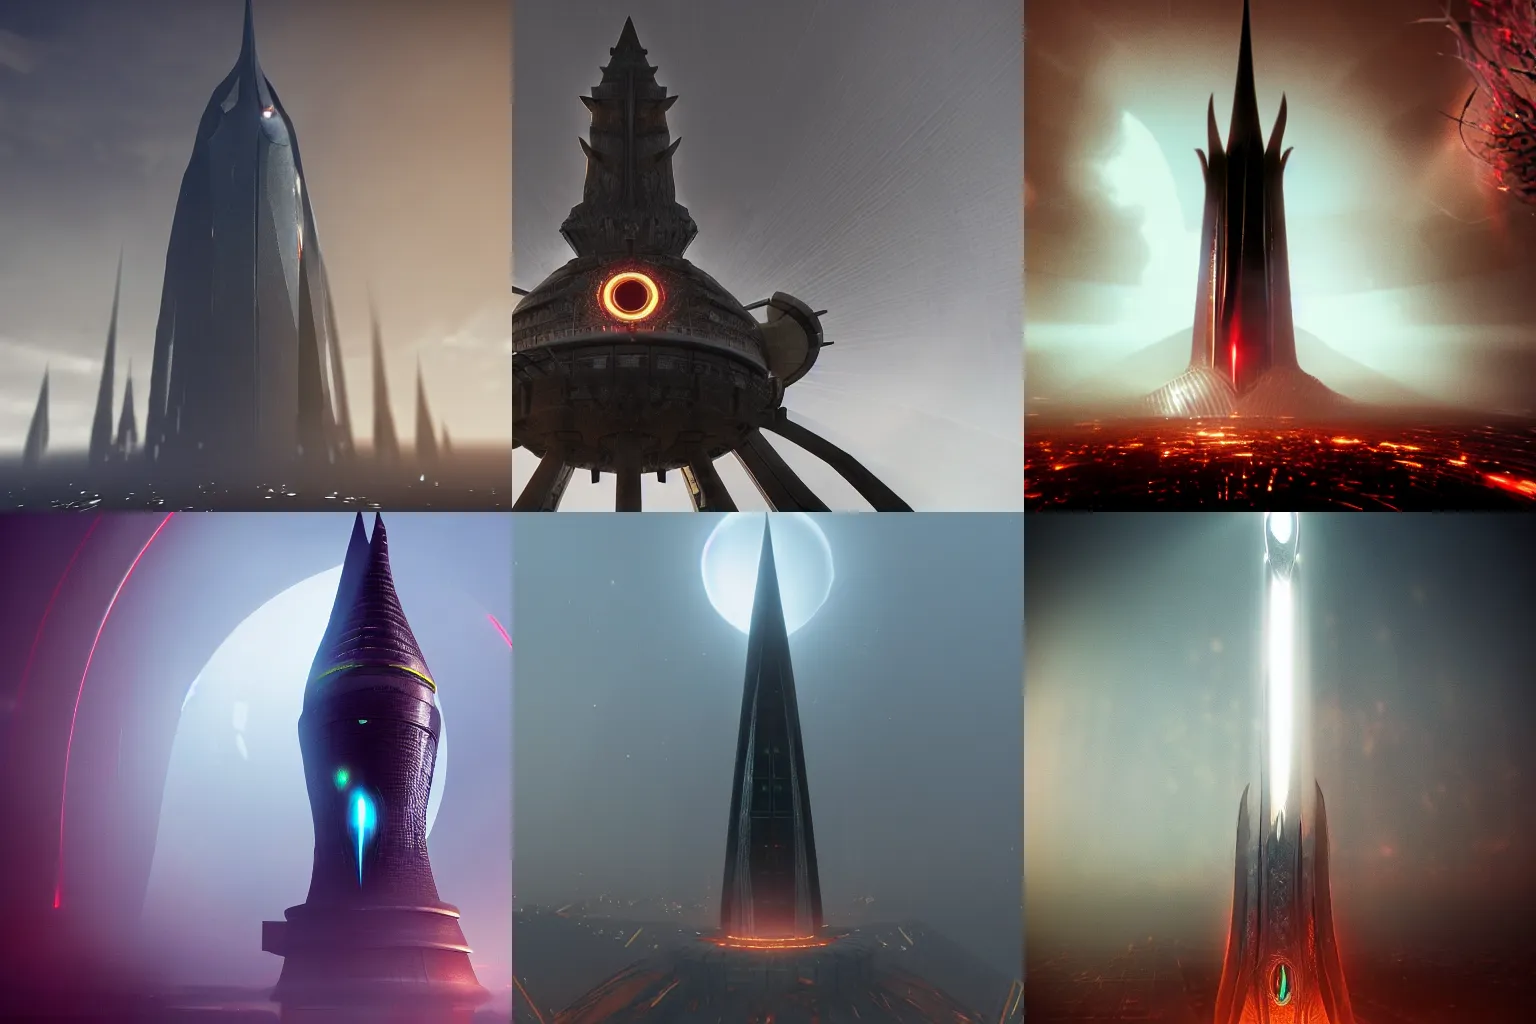 Prompt: eye of sauron tower, octane render, artstation trending